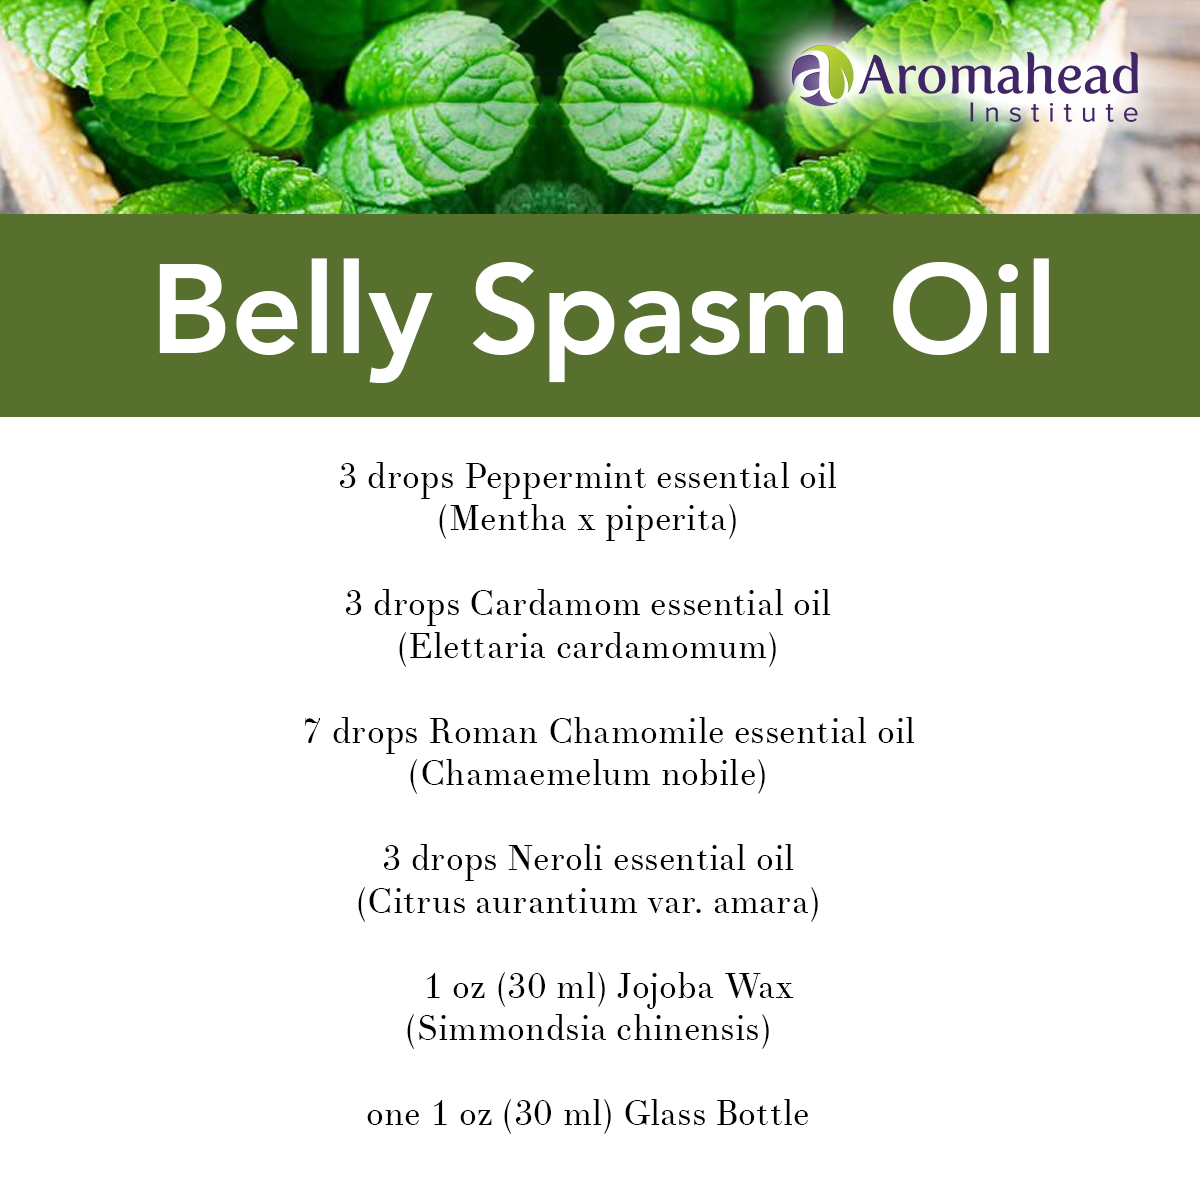 Belly Spasm Oil